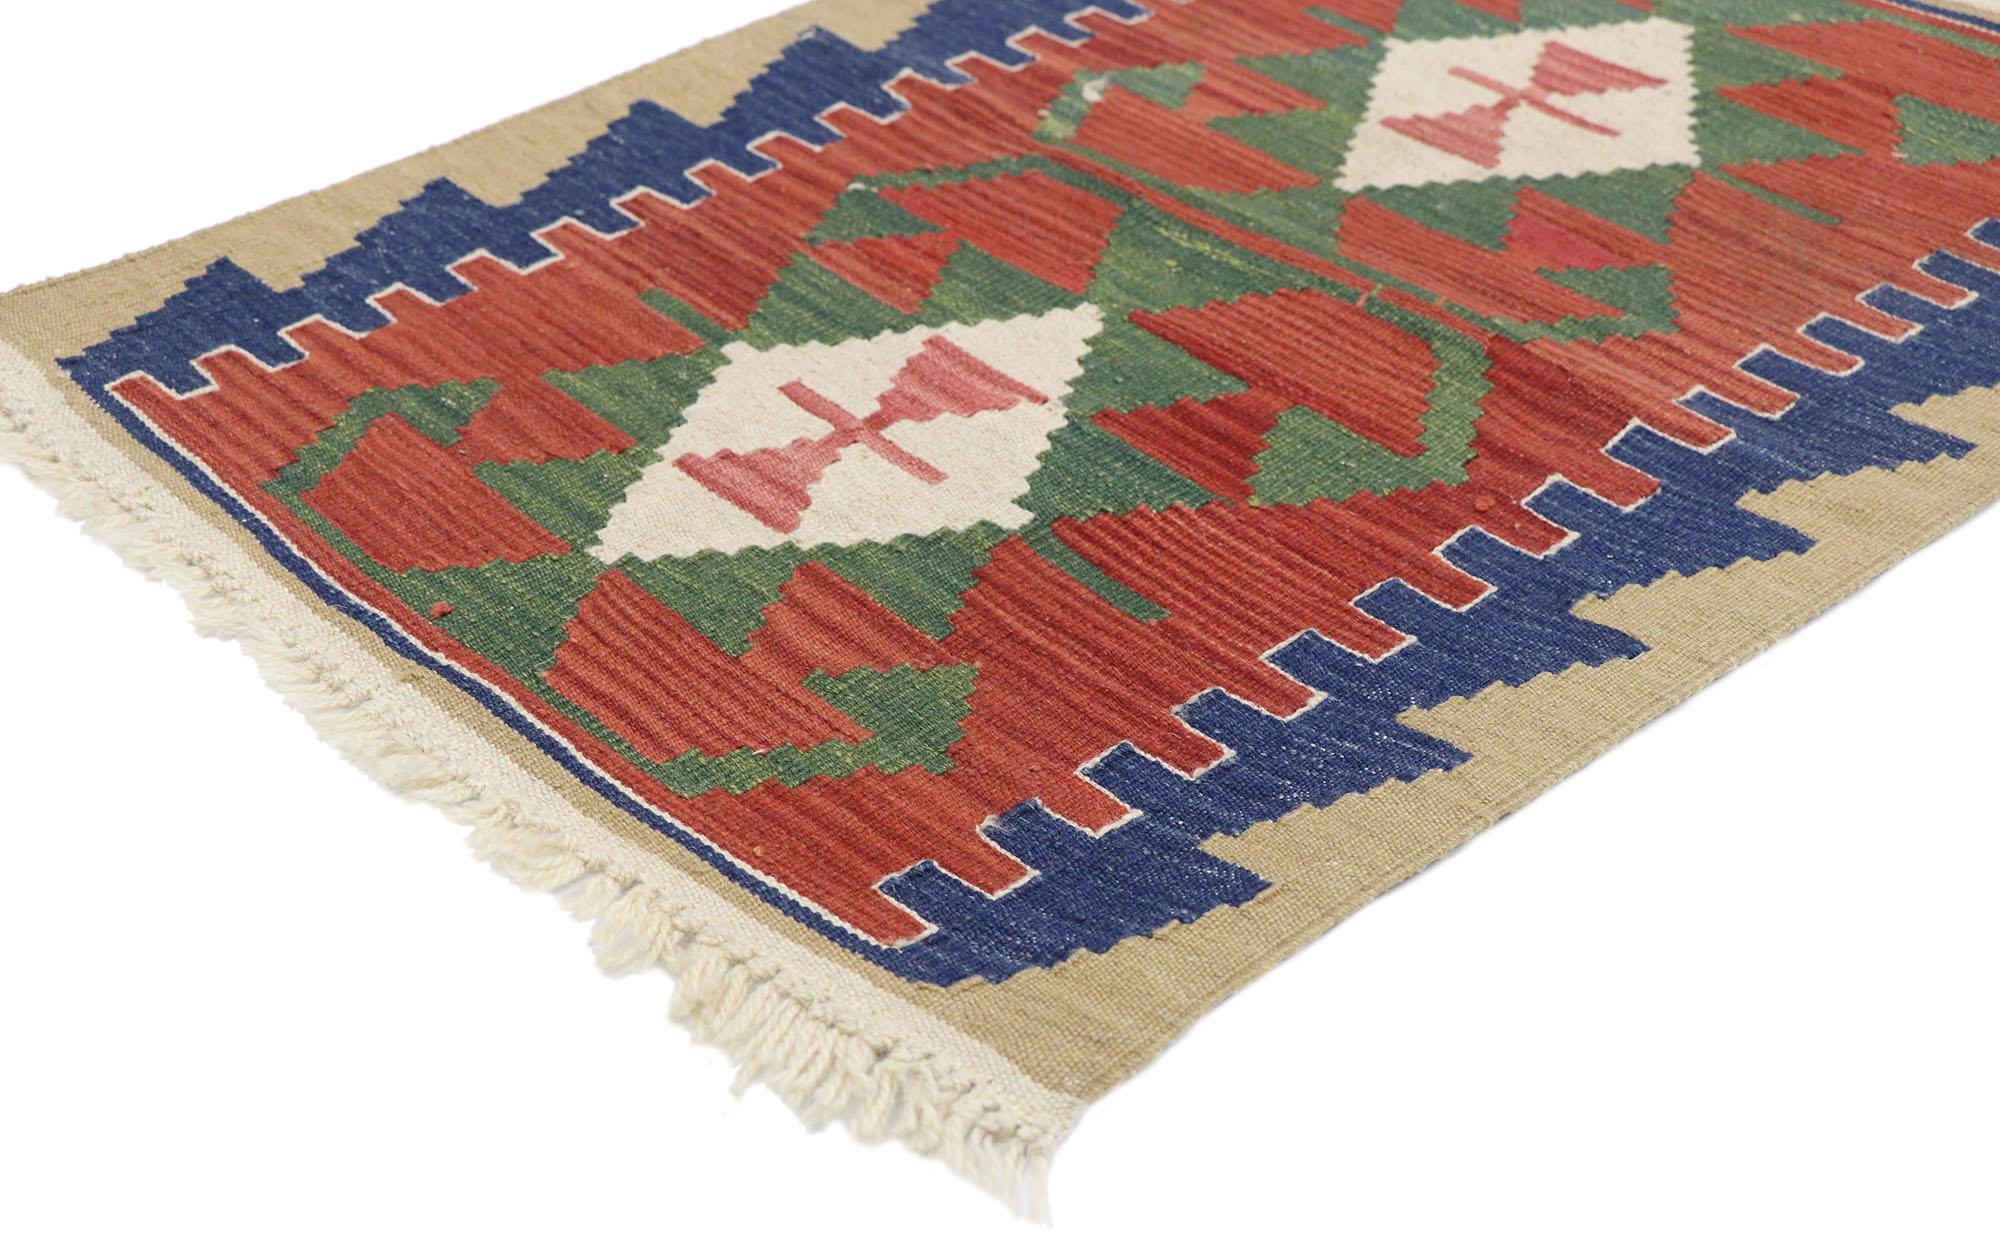 77881, tapis vintage Persan Shiraz Kilim avec style tribal. Plein de petits détails et un design expressif audacieux combiné avec des couleurs vibrantes et un style tribal, ce tapis kilim persan vintage en laine tissé à la main est une vision